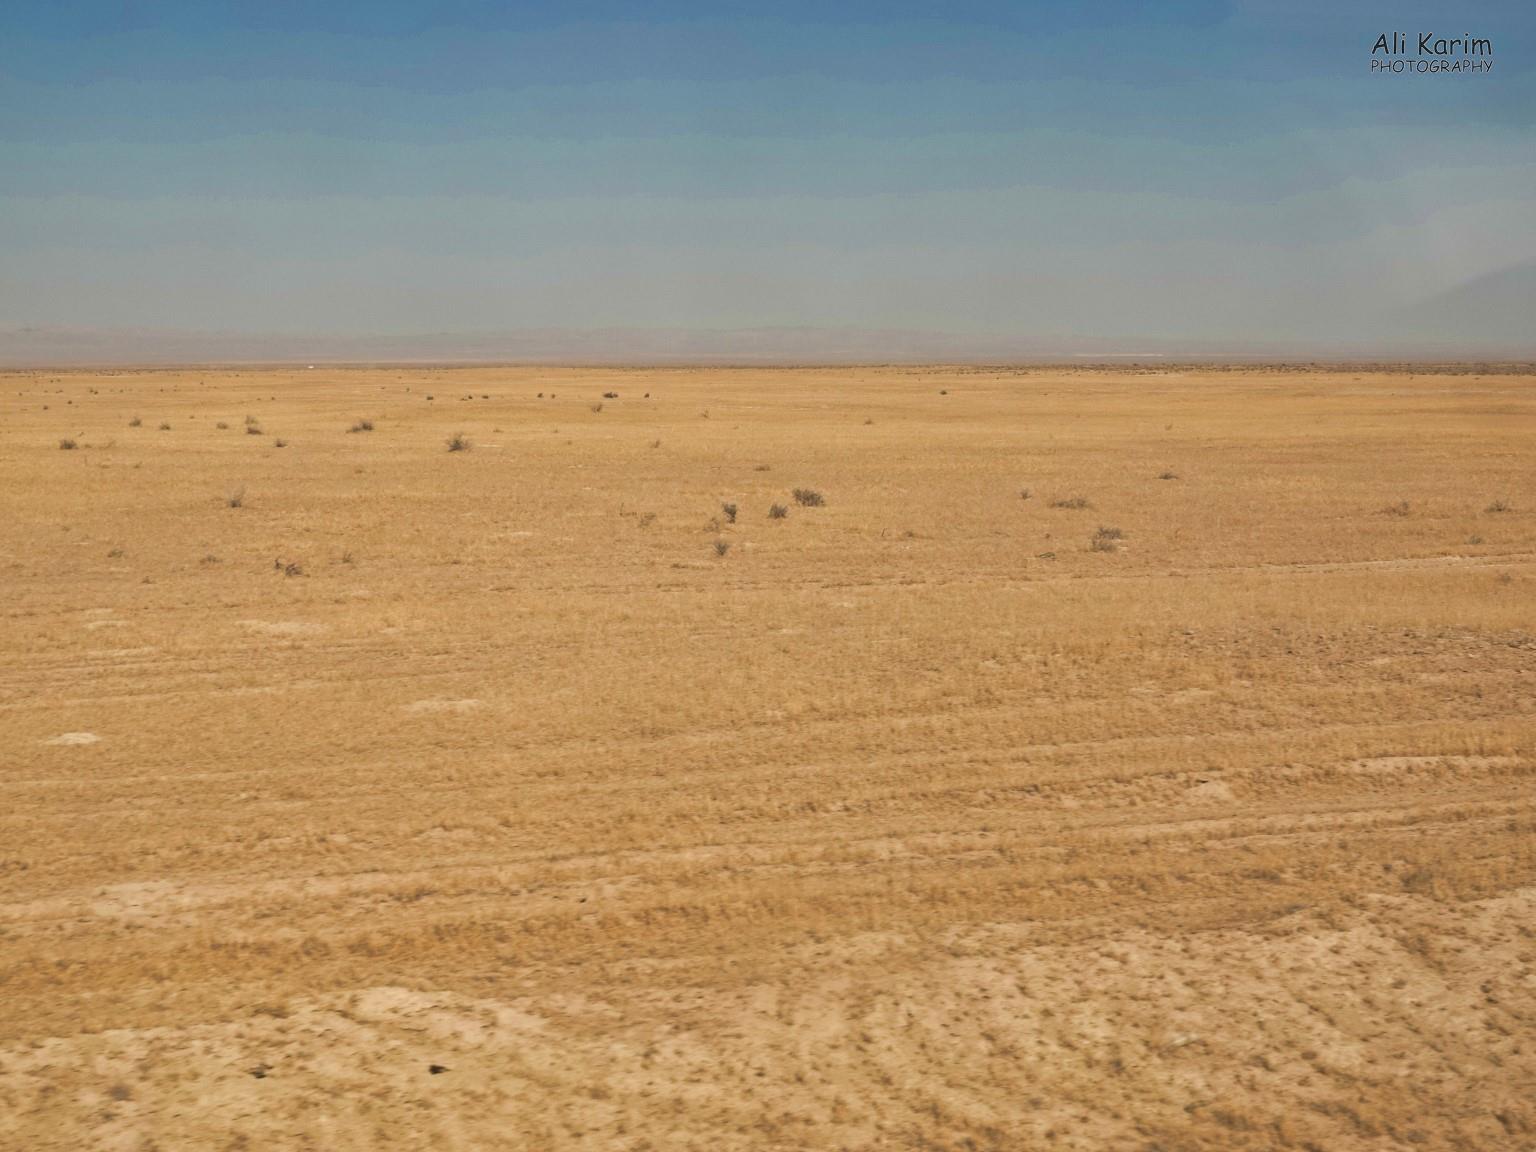 Khiva, Oct 2019, Desert like scrub-land